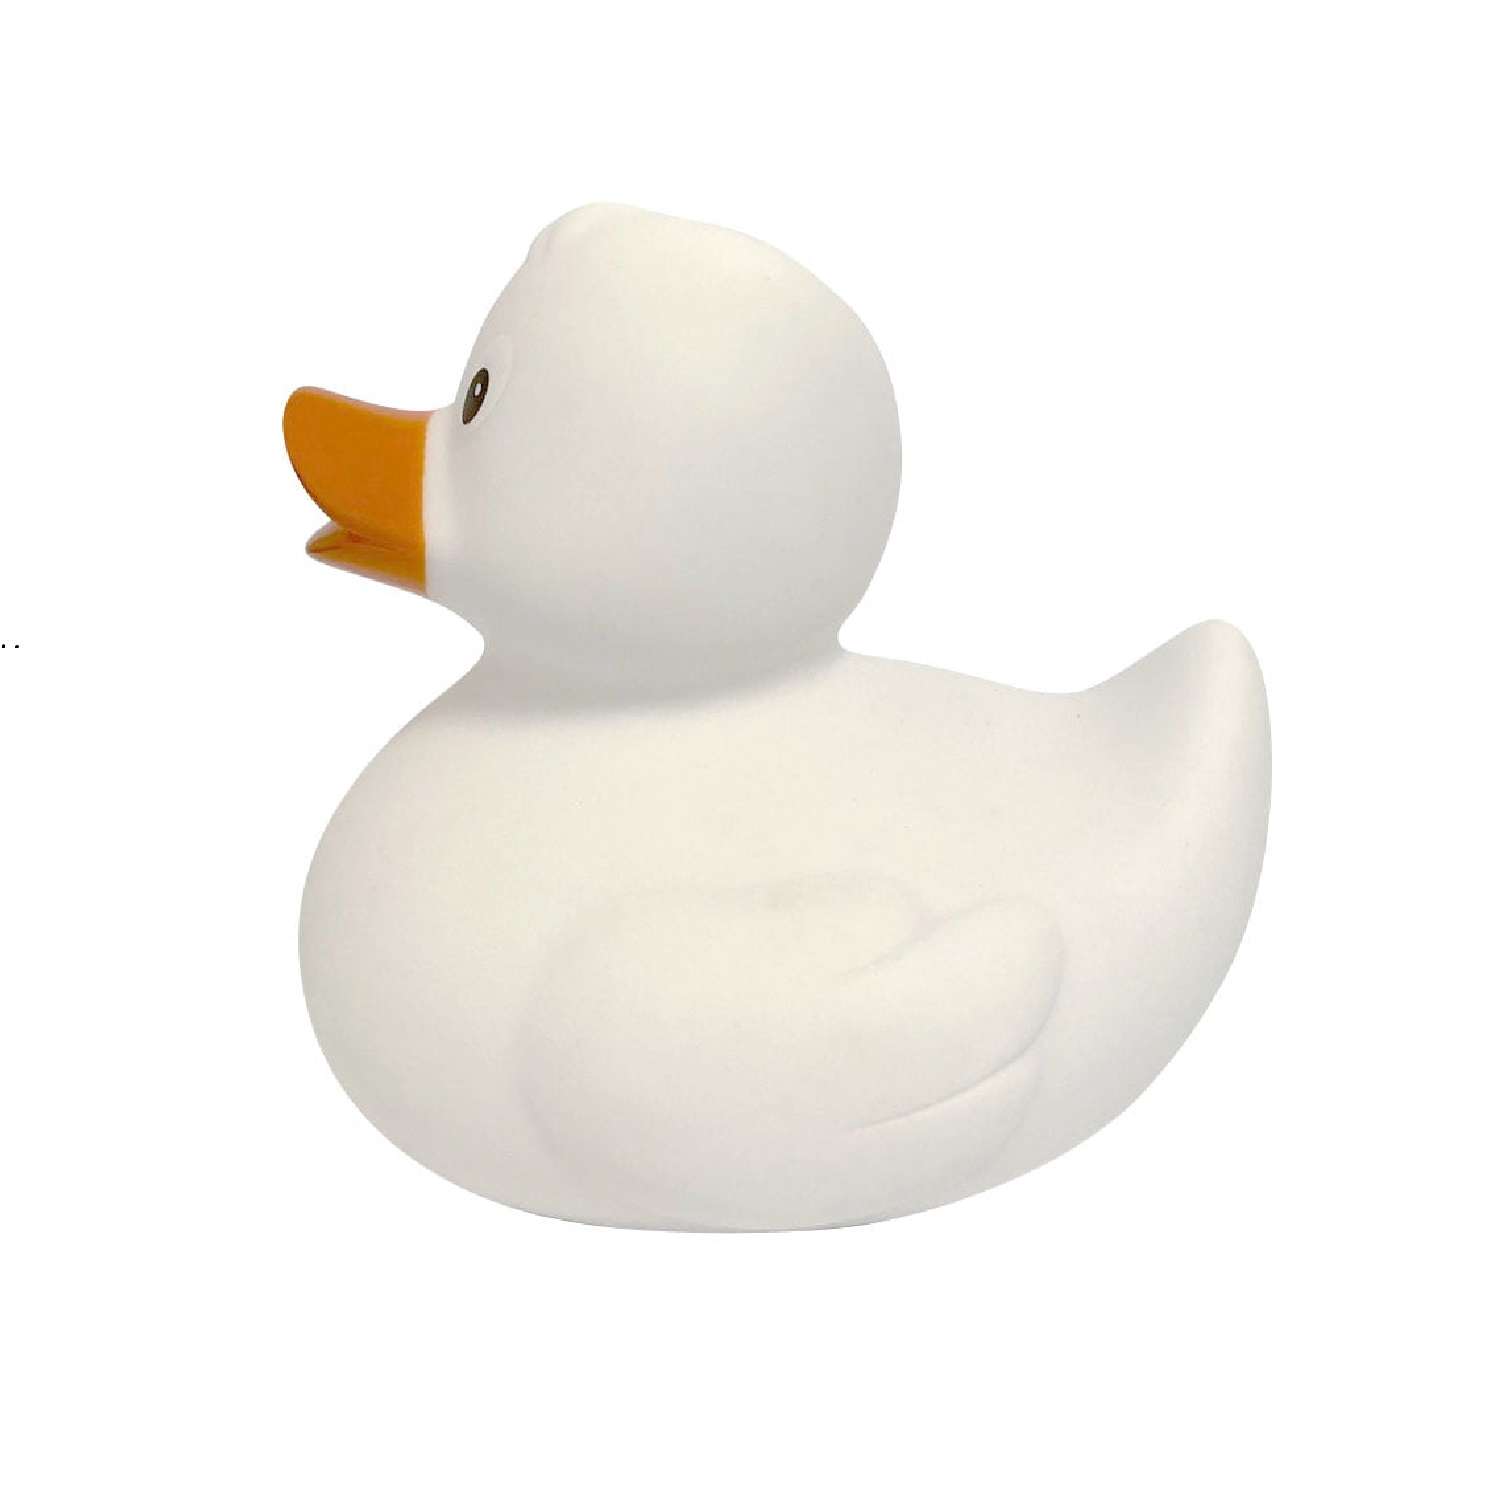 Игрушка Funny ducks для ванной Белая уточка 1303 - фото 3